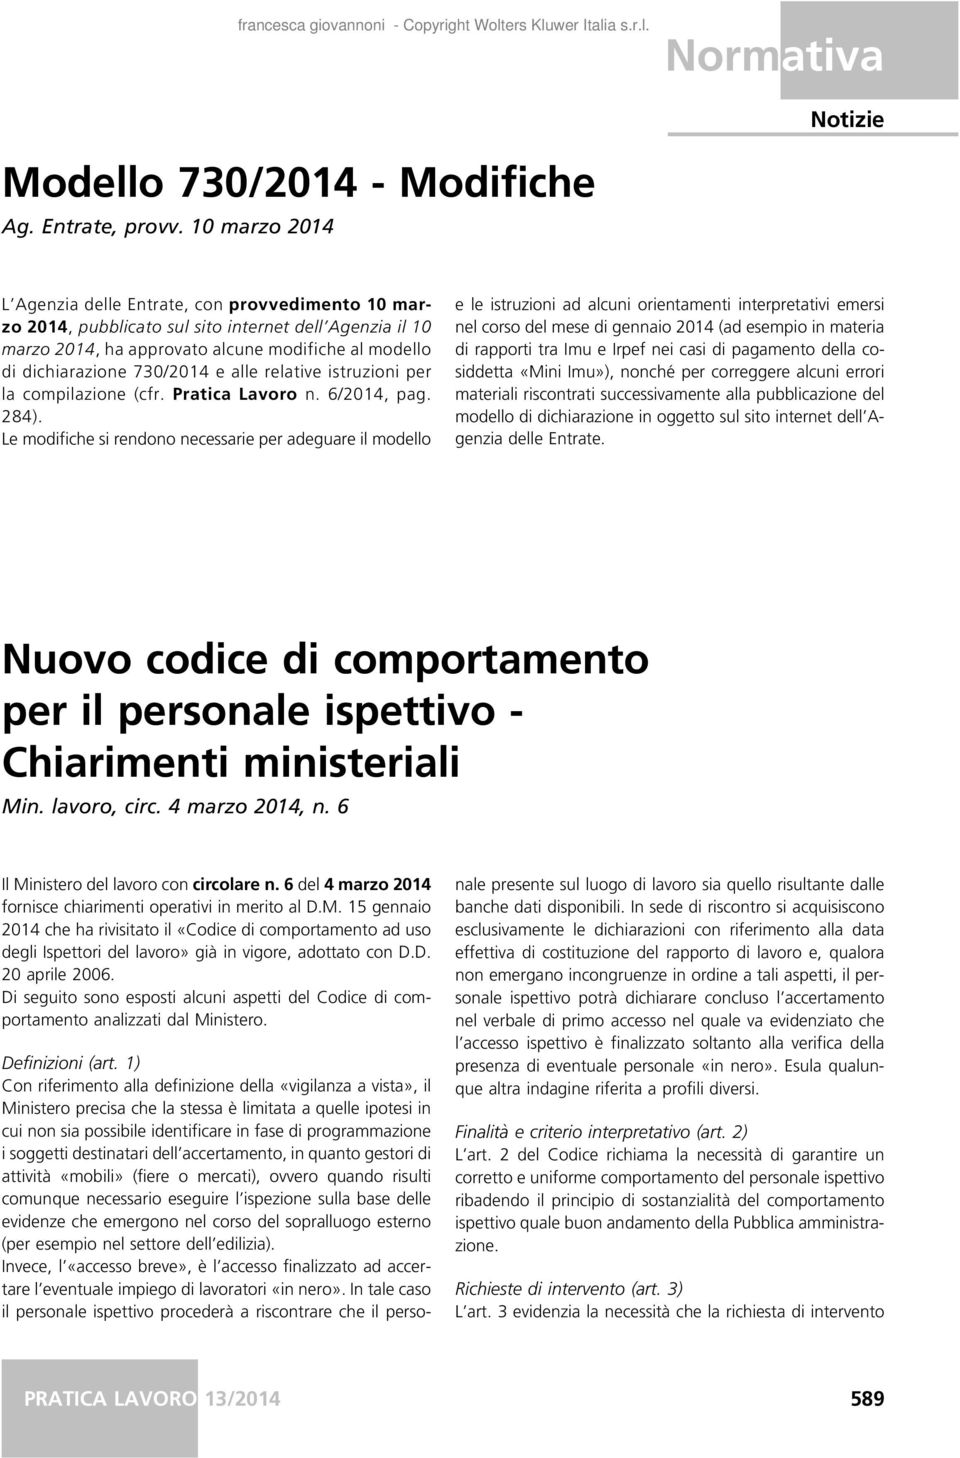 e alle relative istruzioni per la compilazione (cfr. Pratica Lavoro n. 6/2014, pag. 284).